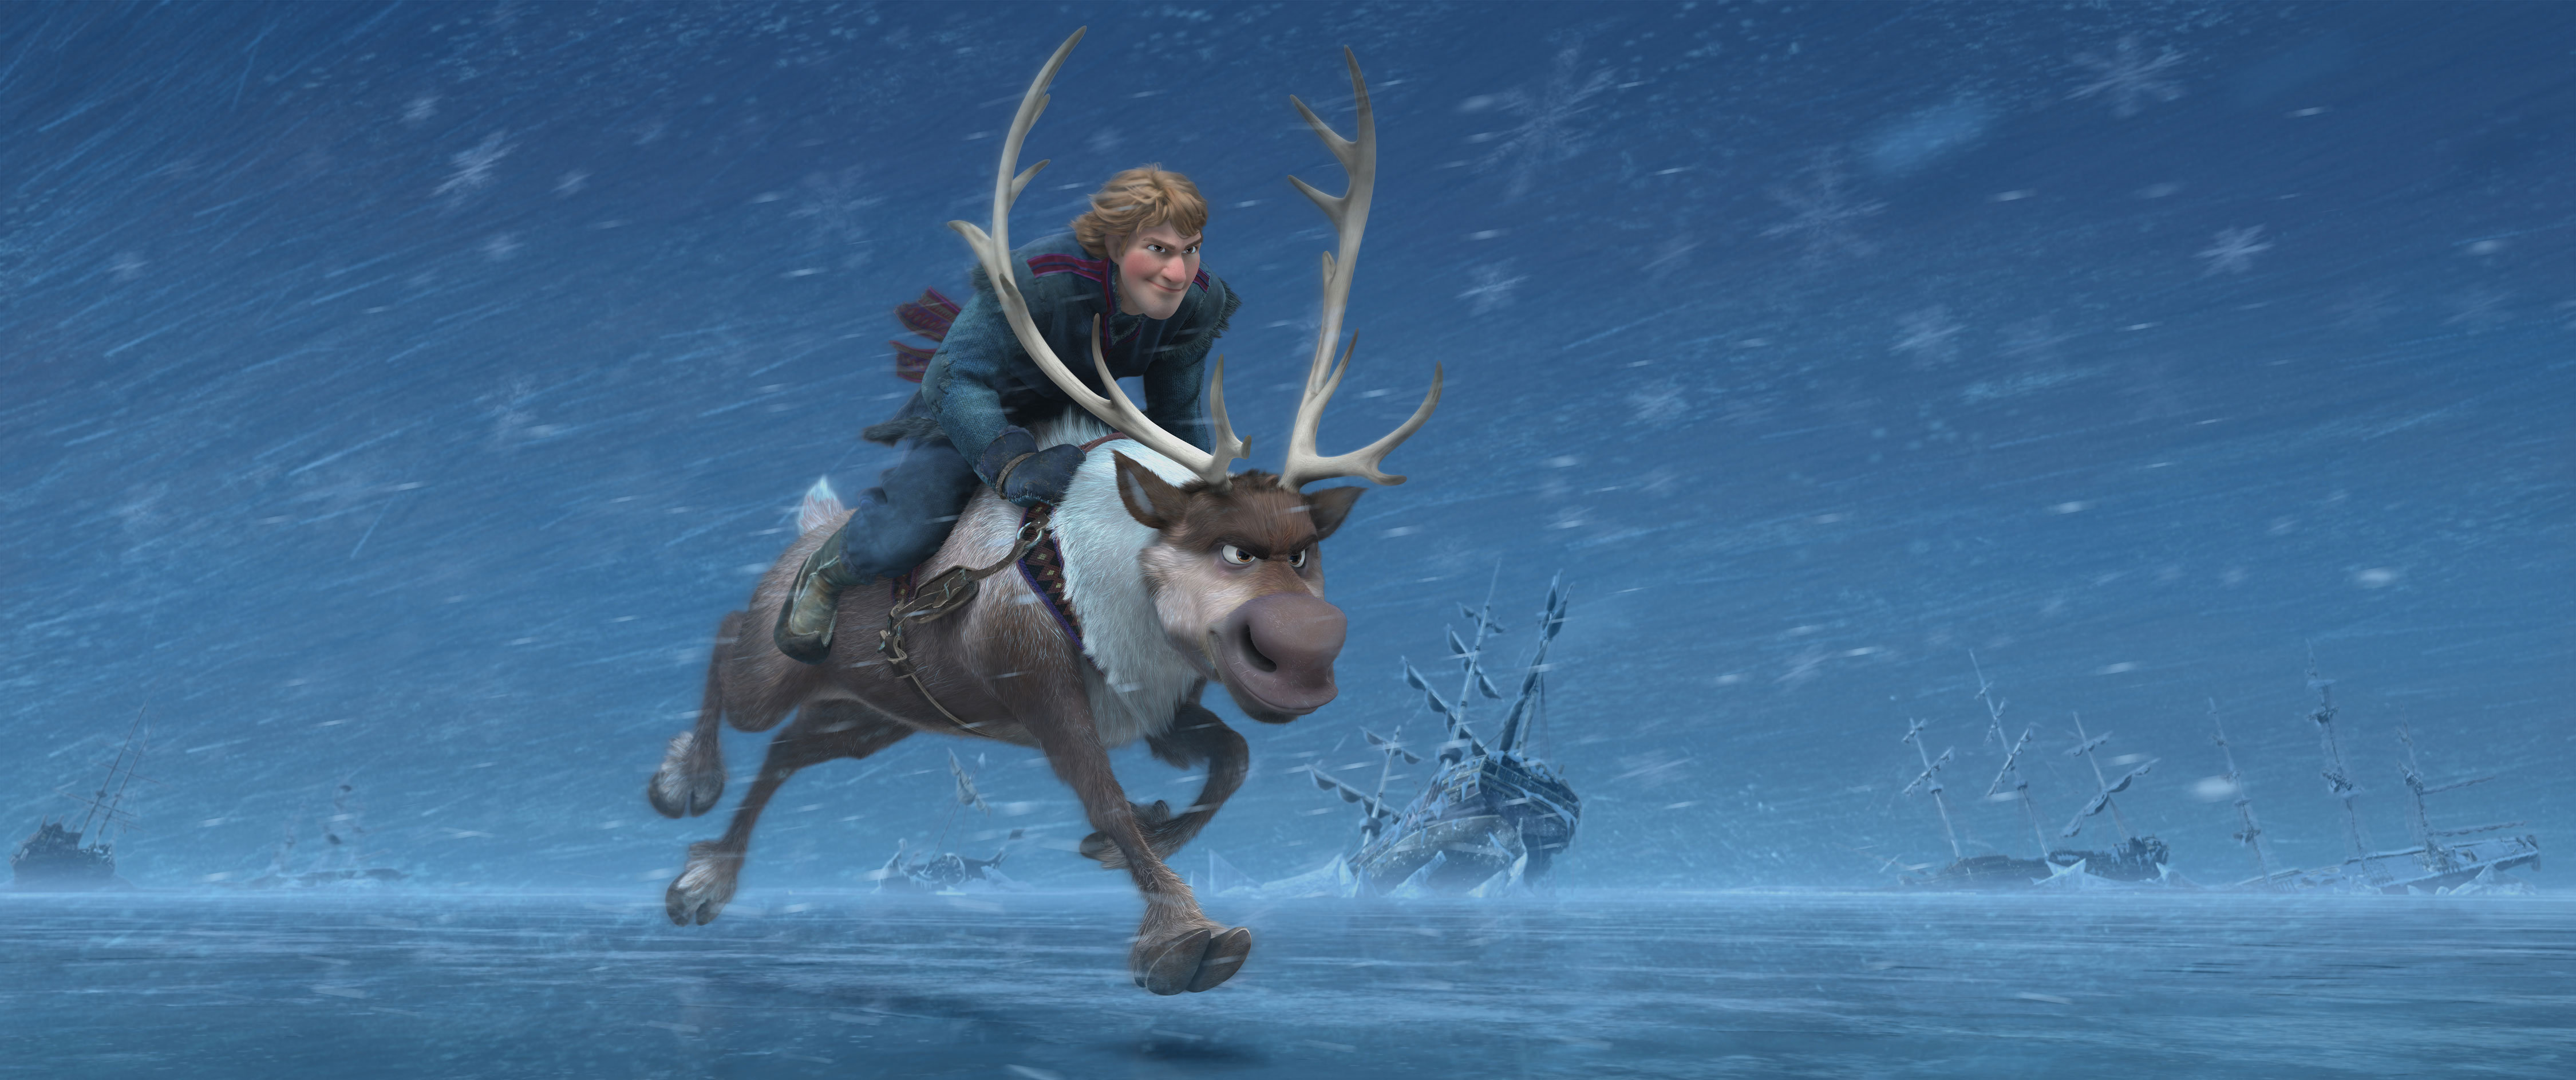 Frozen - Disney movie - Kristoff and sven